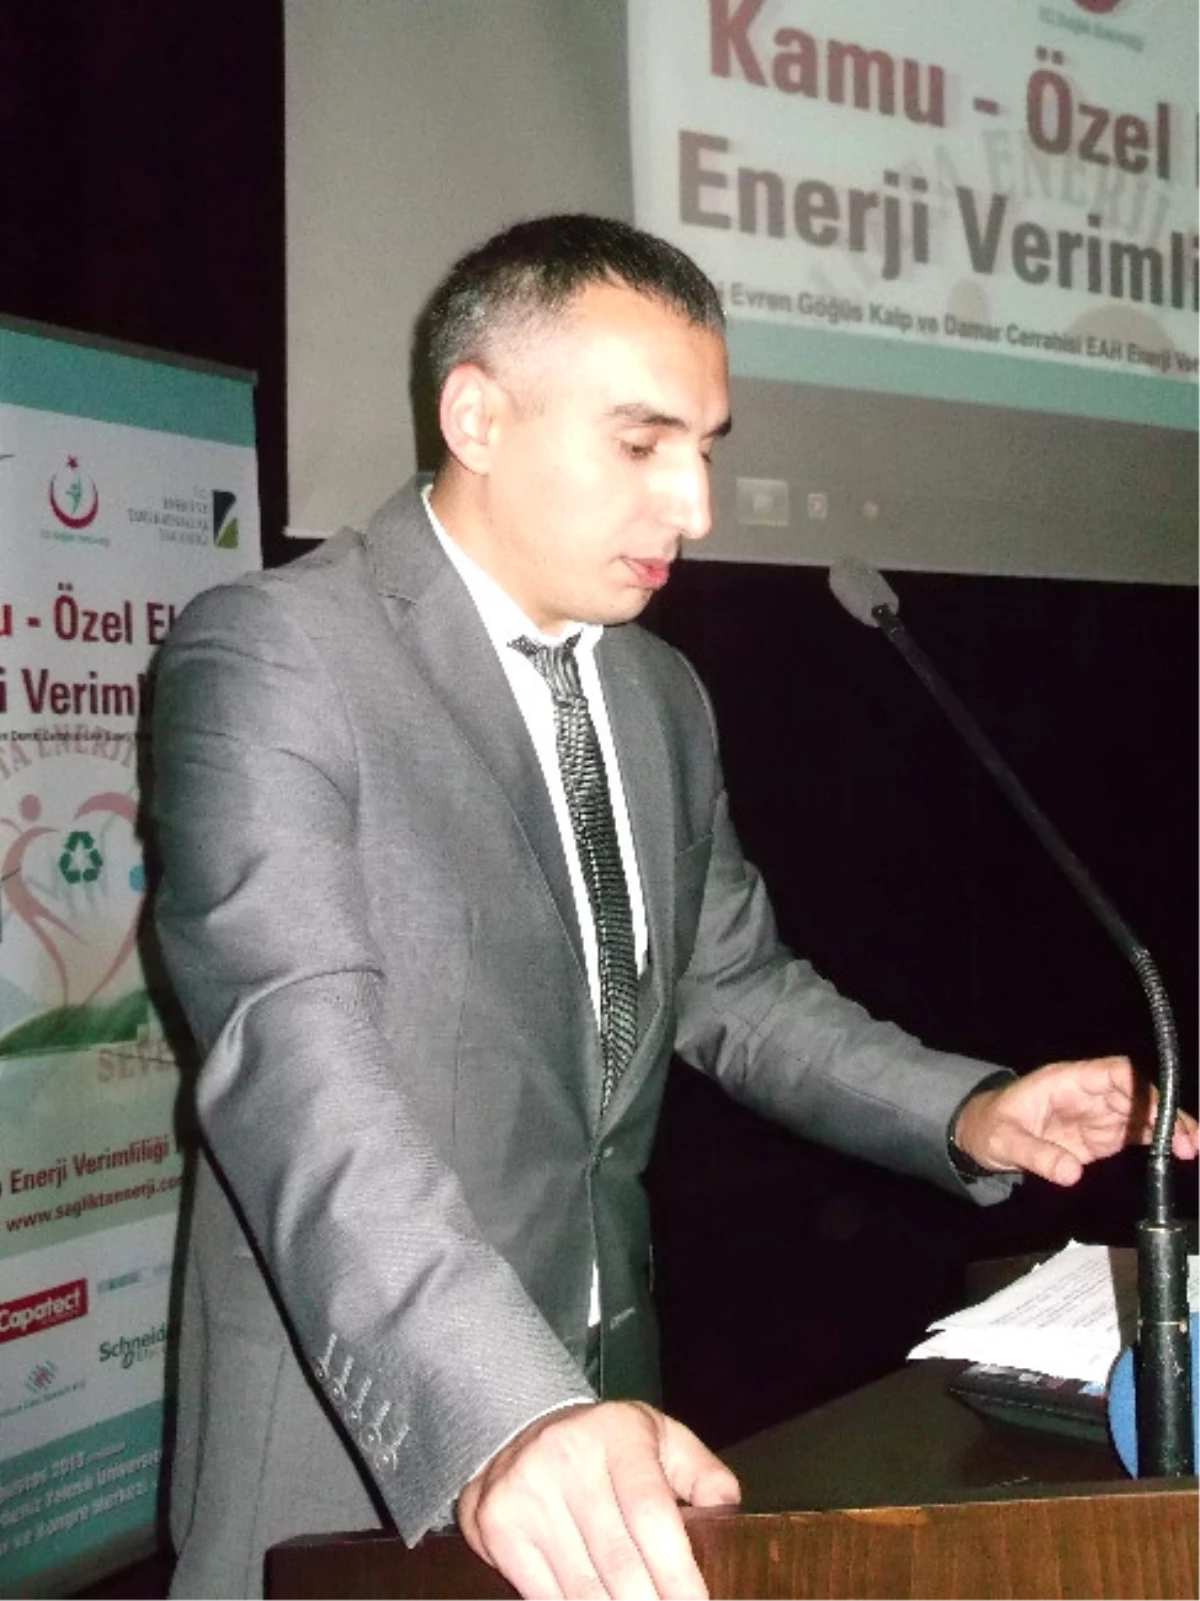 Trabzon\'da Kamu-Özel Elele Enerji Verimliliğine Projesi Çalıştayı